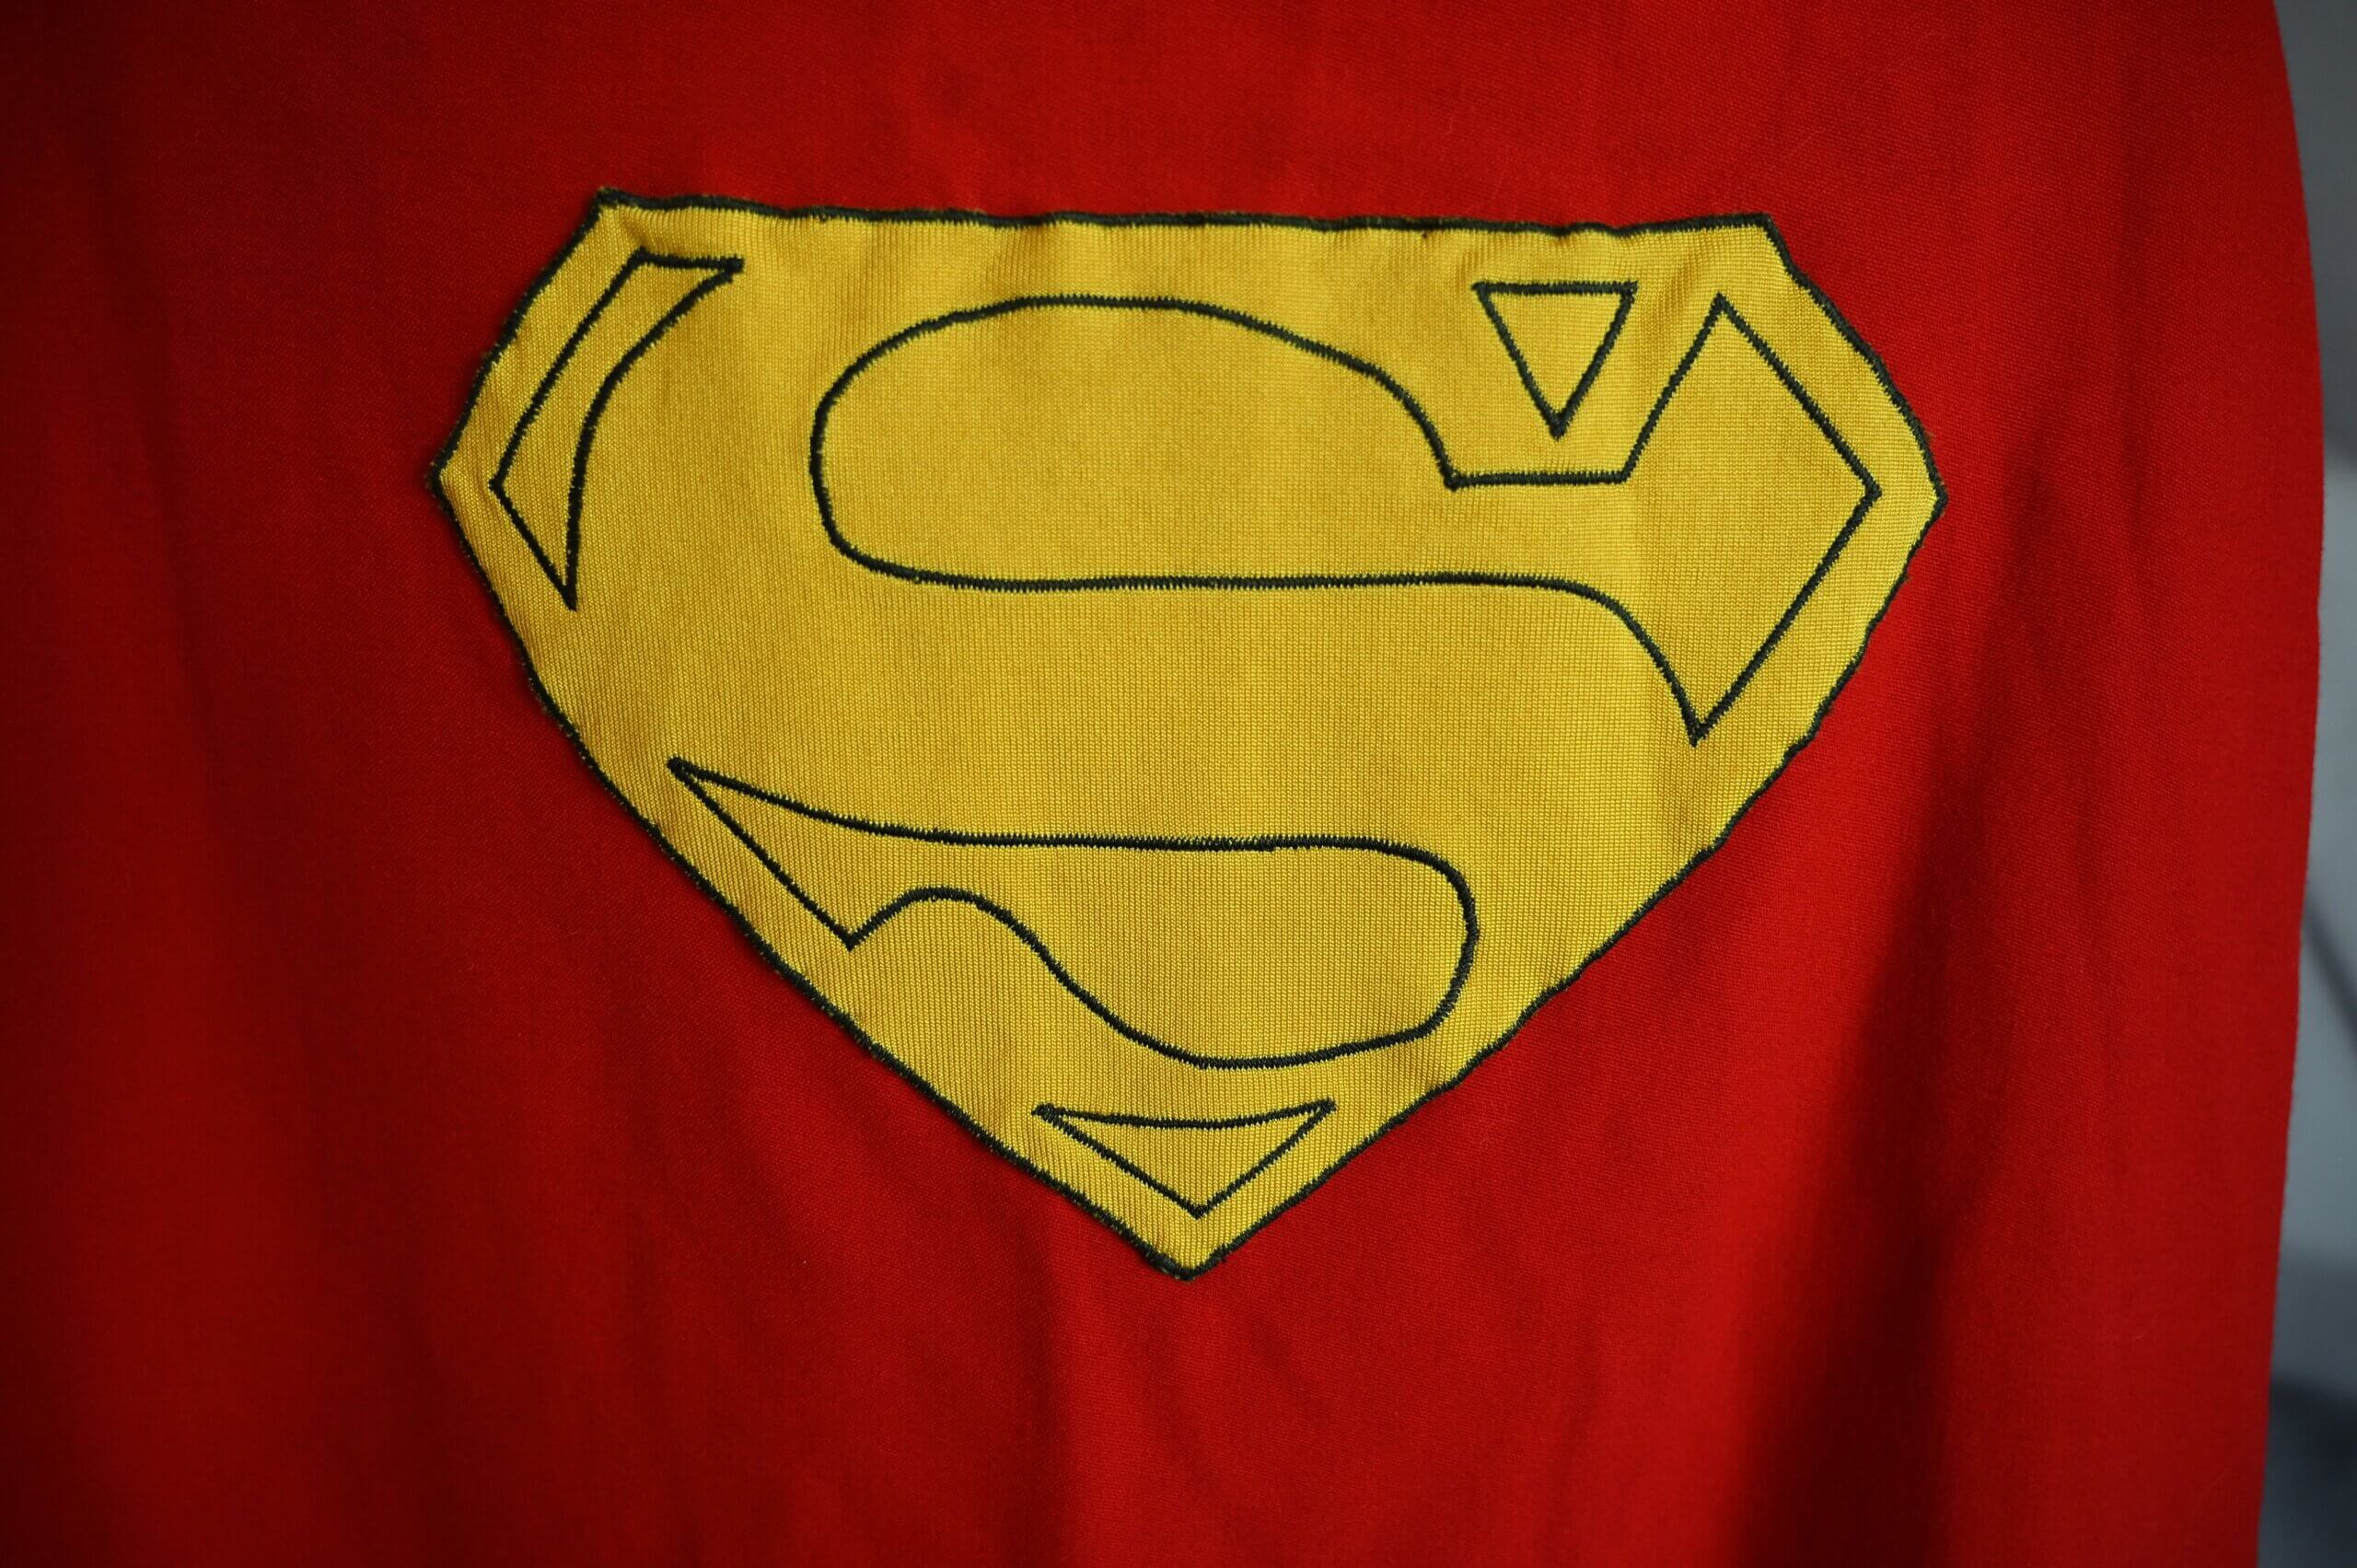 Superman, Creators, Story, Logo, Movies, Actors, & Facts